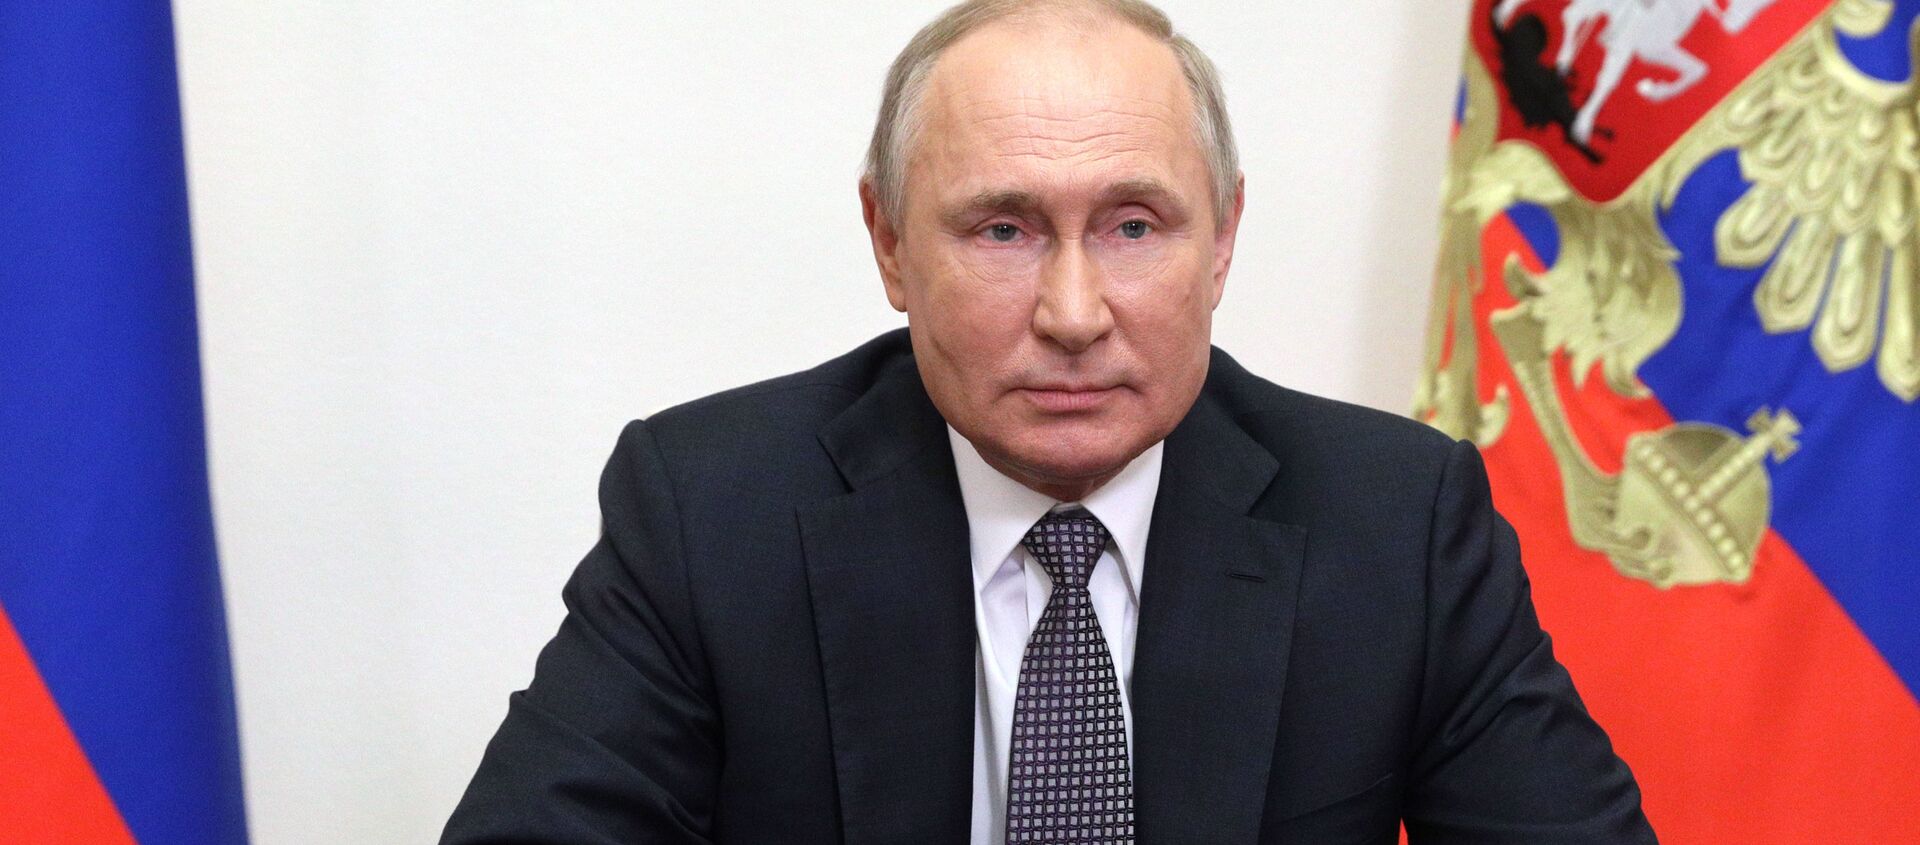 Tổng thống Nga Vladimir Putin gửi thông điệp qua video tới các đại biểu và khách mời của Hội nghị Matxcơva lần thứ IX về An ninh quốc tế. - Sputnik Việt Nam, 1920, 23.06.2021